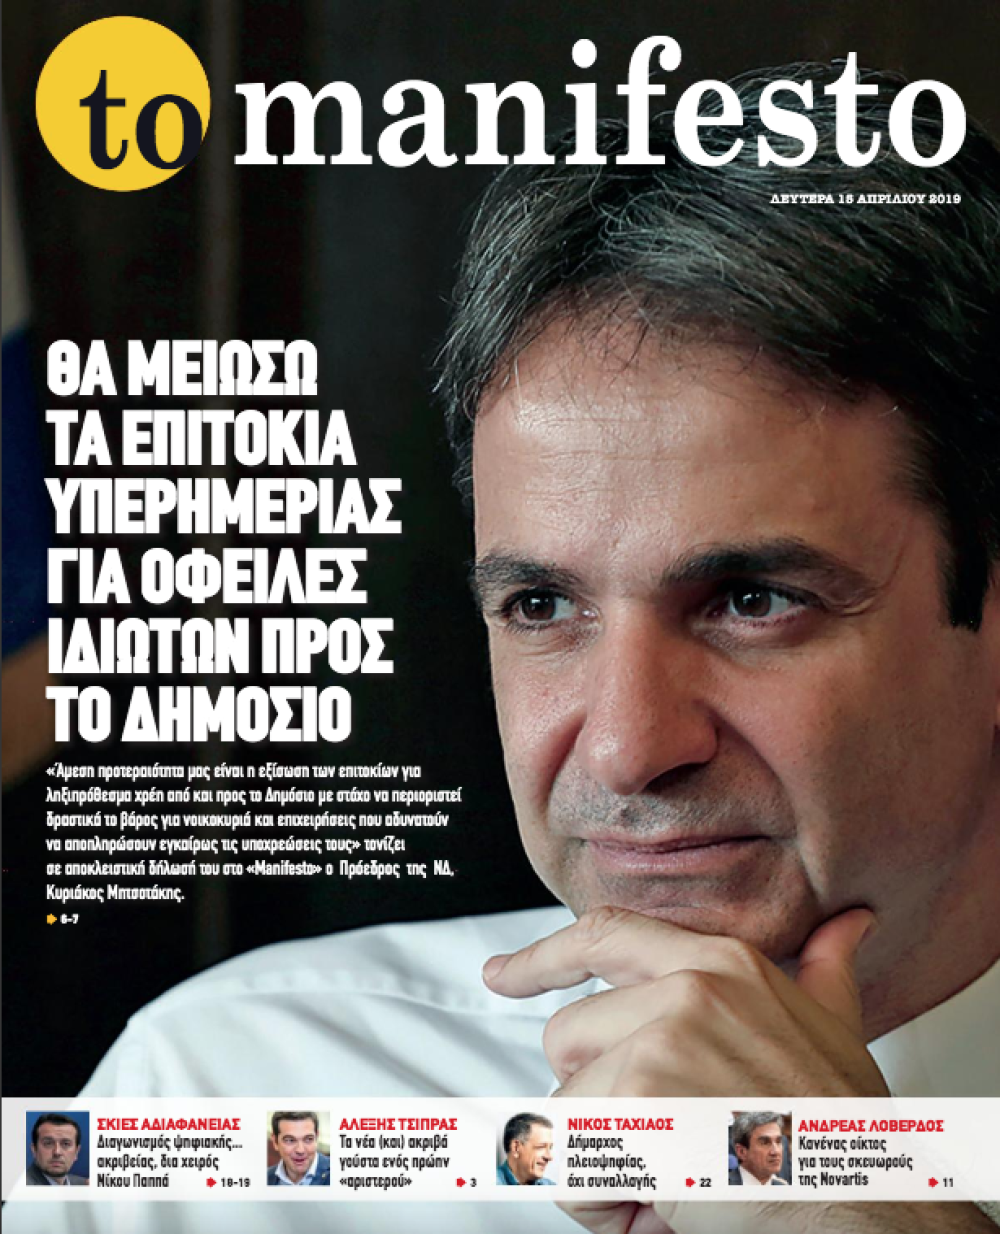 Δύο χρόνια tomanifesto.gr: Σας ευχαριστούμε και συνεχίζουμε&#8230;